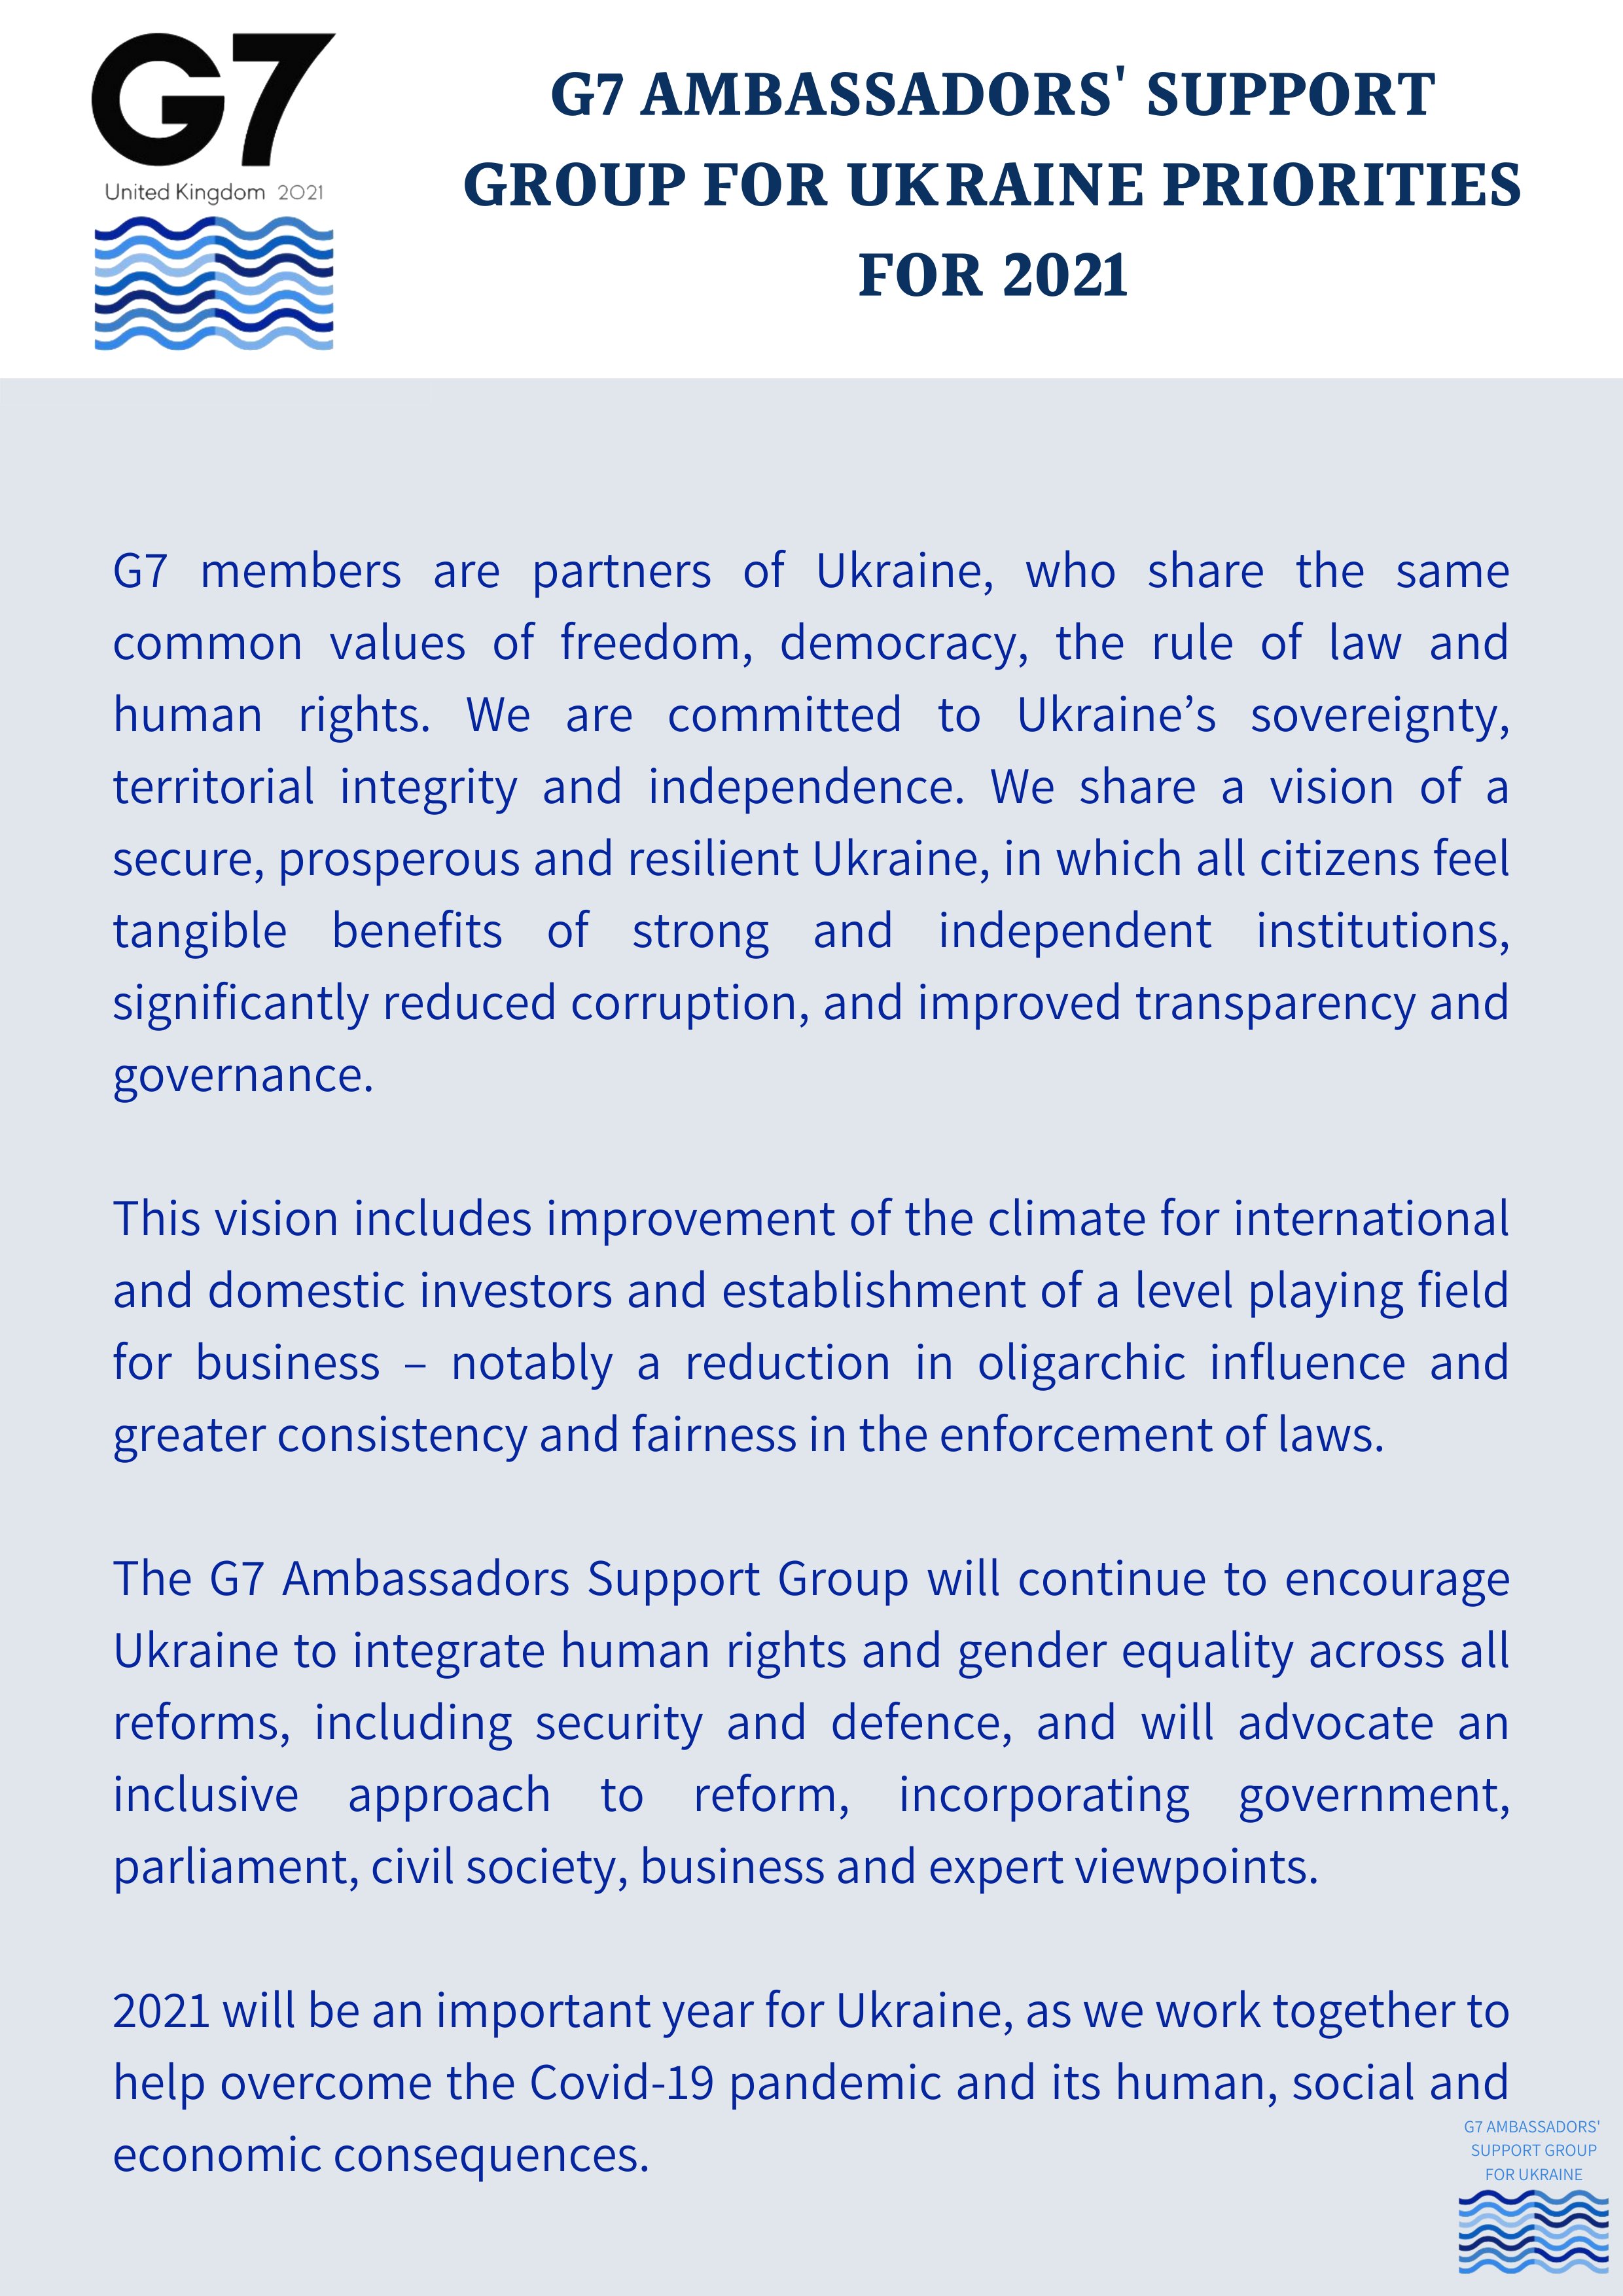 Приоритеты для Украины Большой семерки, с.1